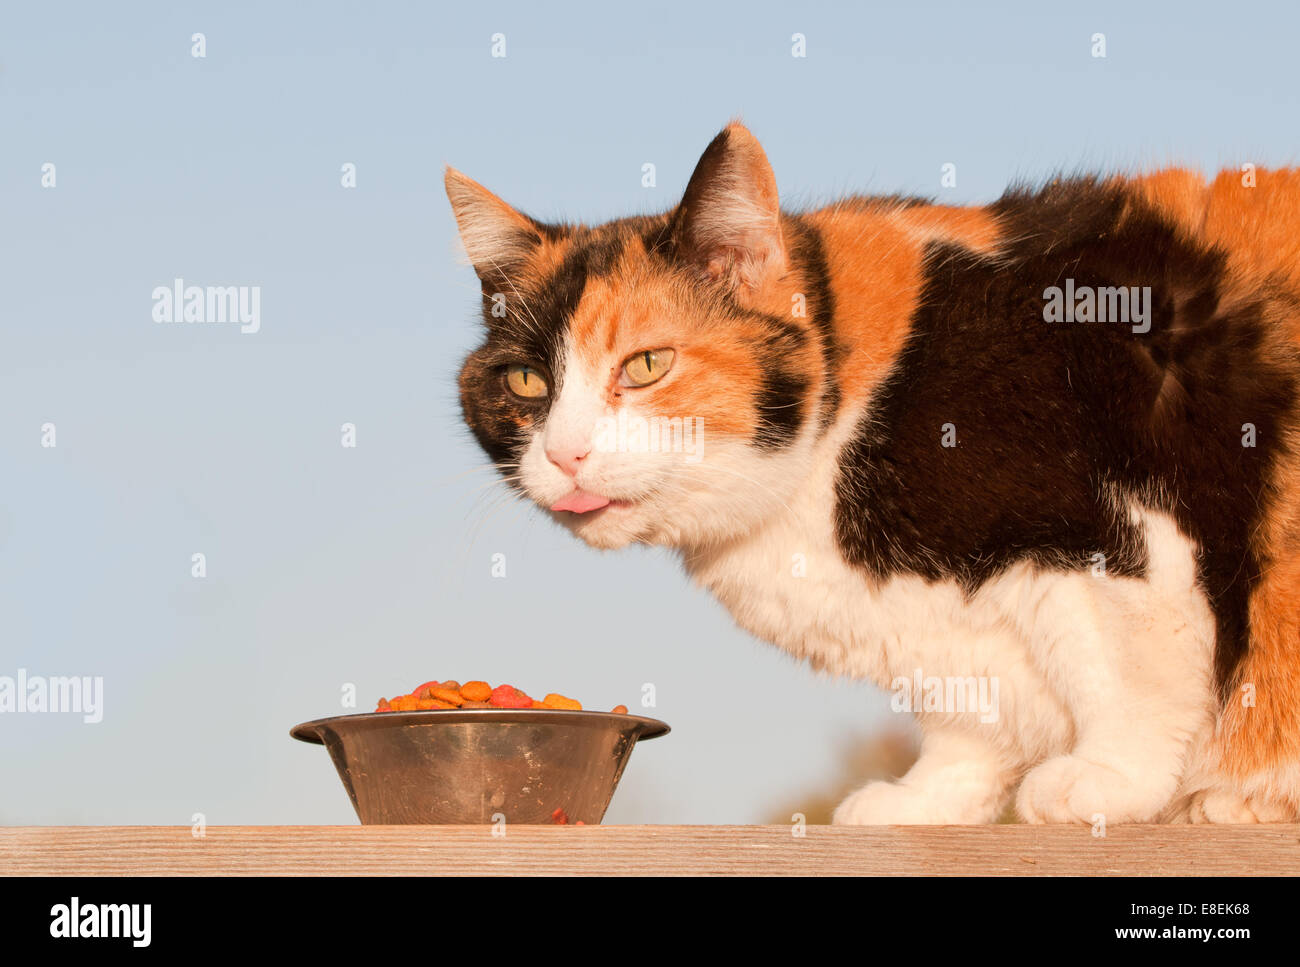 Beau chat calico croquette de manger en plein air, au printemps soleil du soir Banque D'Images